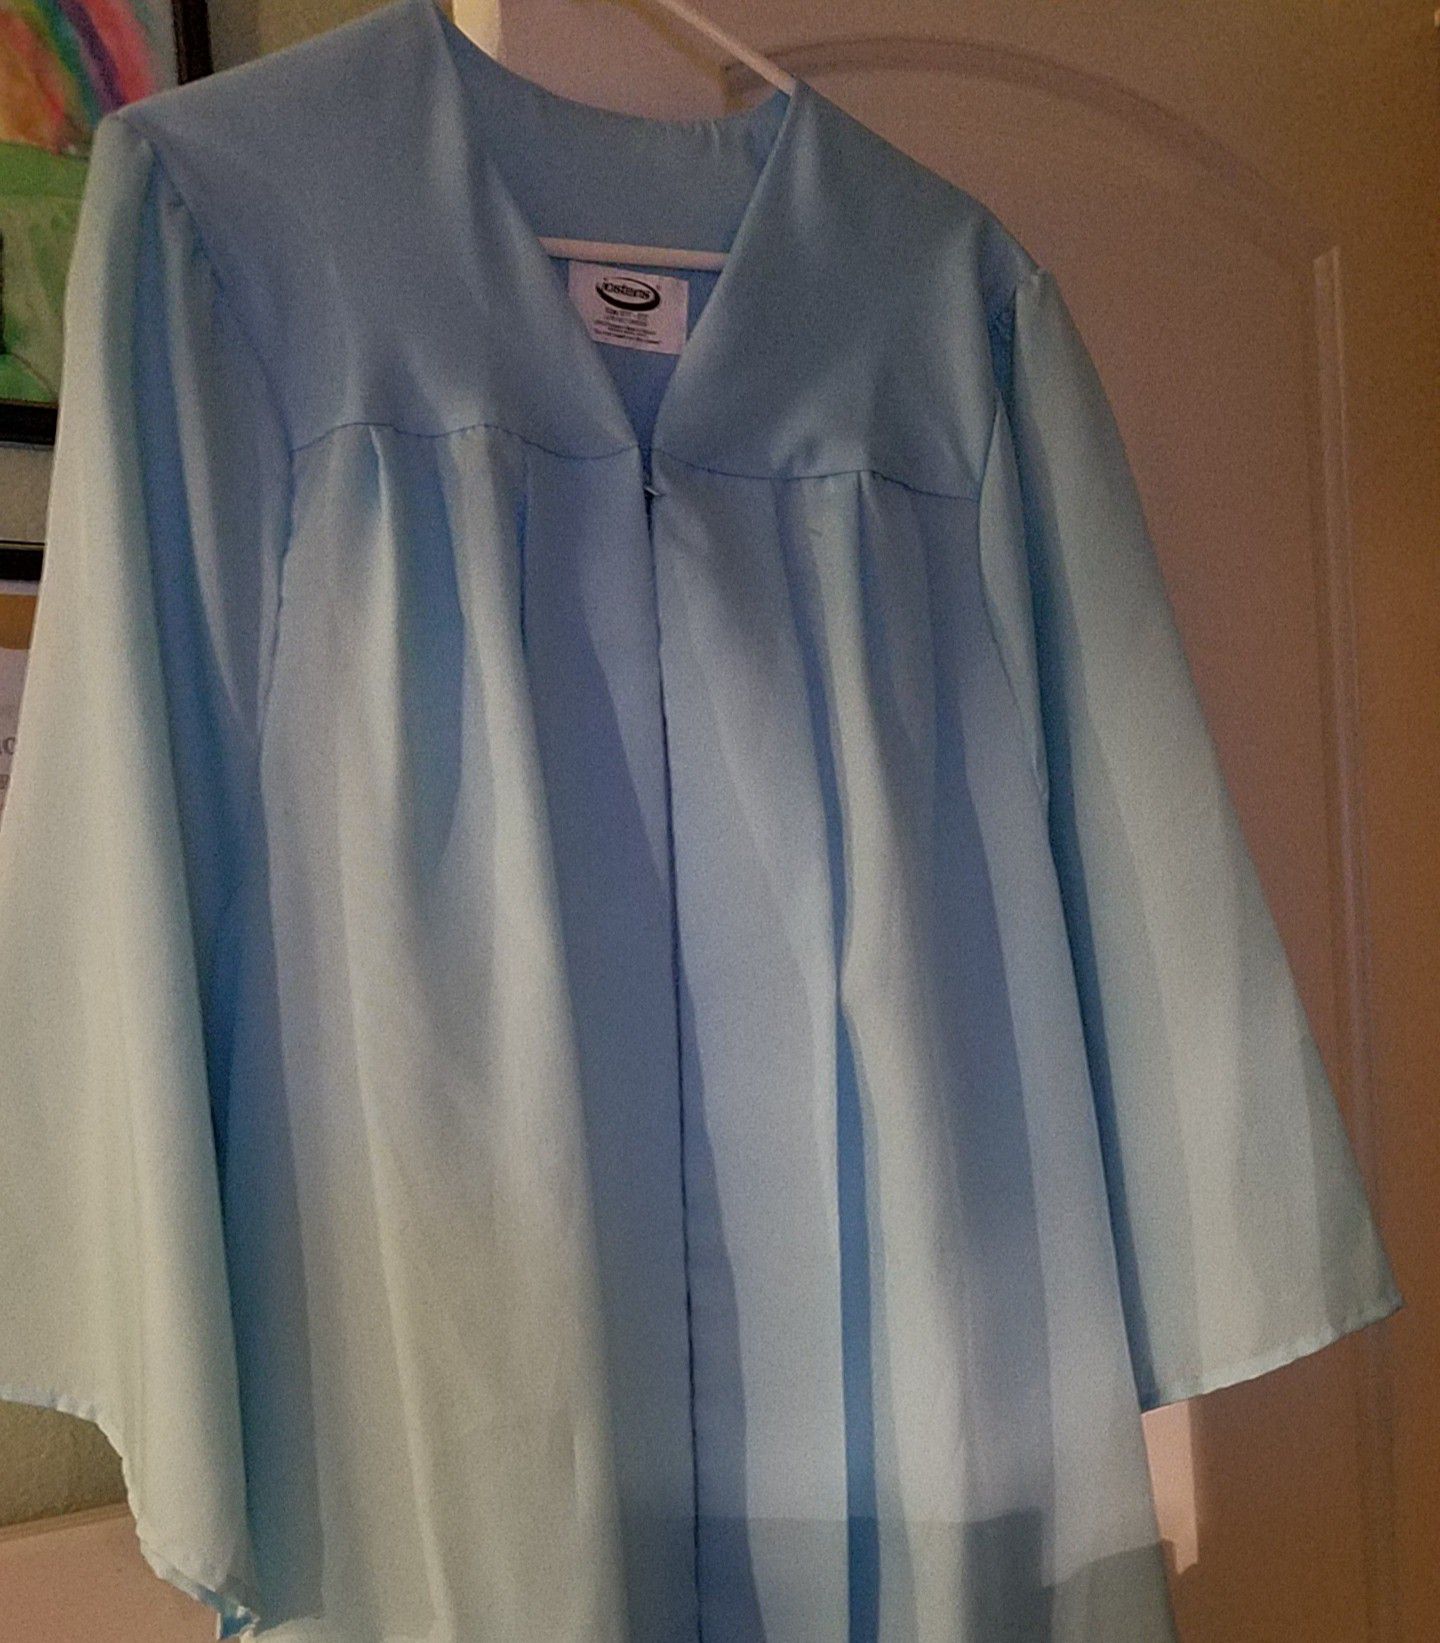 Josten Graduation Light Blue Gown